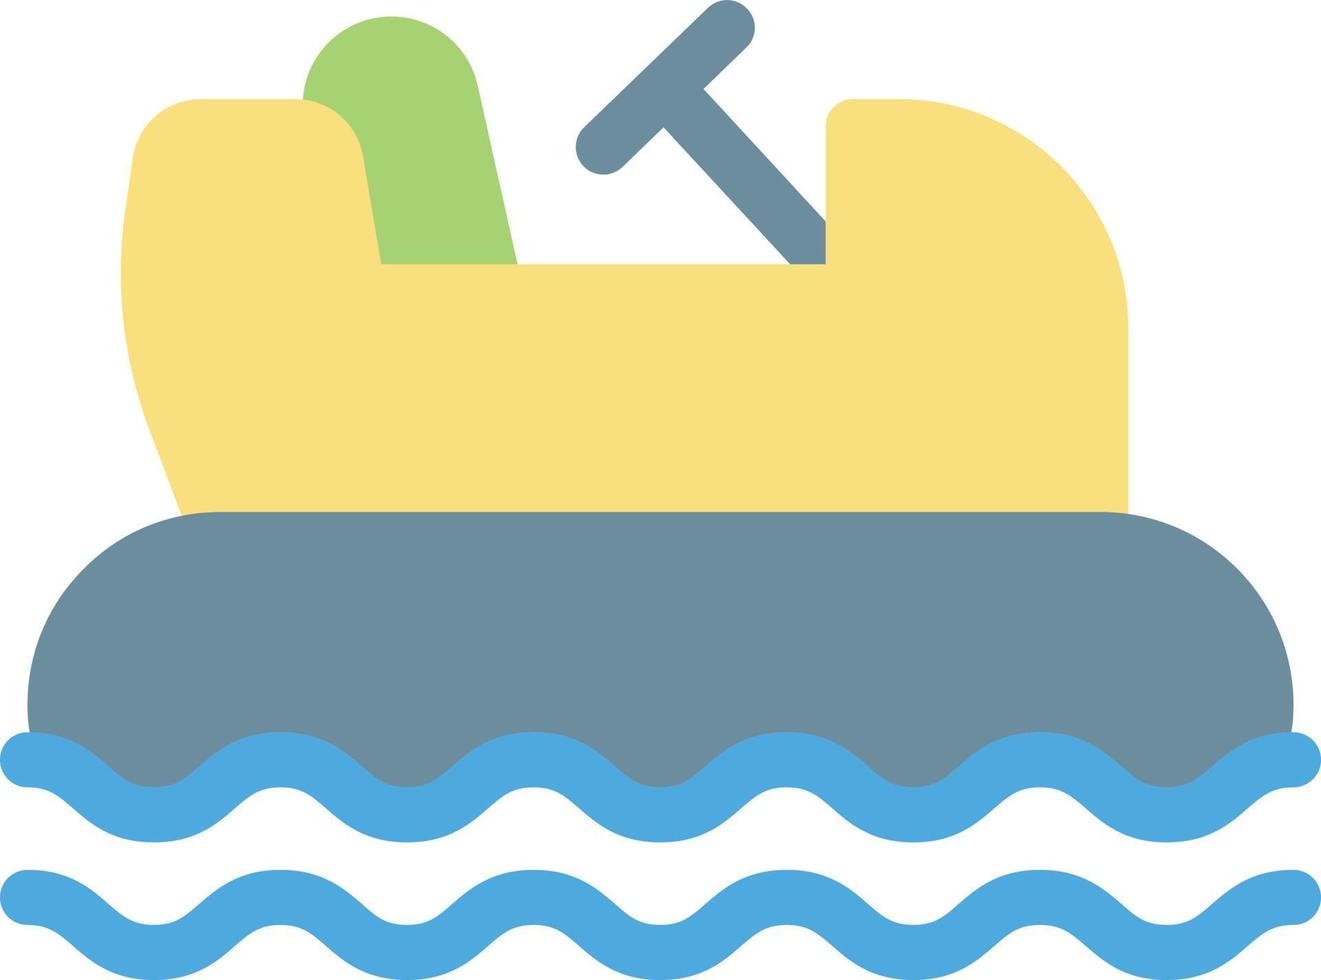 stötfångare båt vektor illustration på en bakgrund.premium kvalitet symbols.vector ikoner för begrepp och grafisk design.